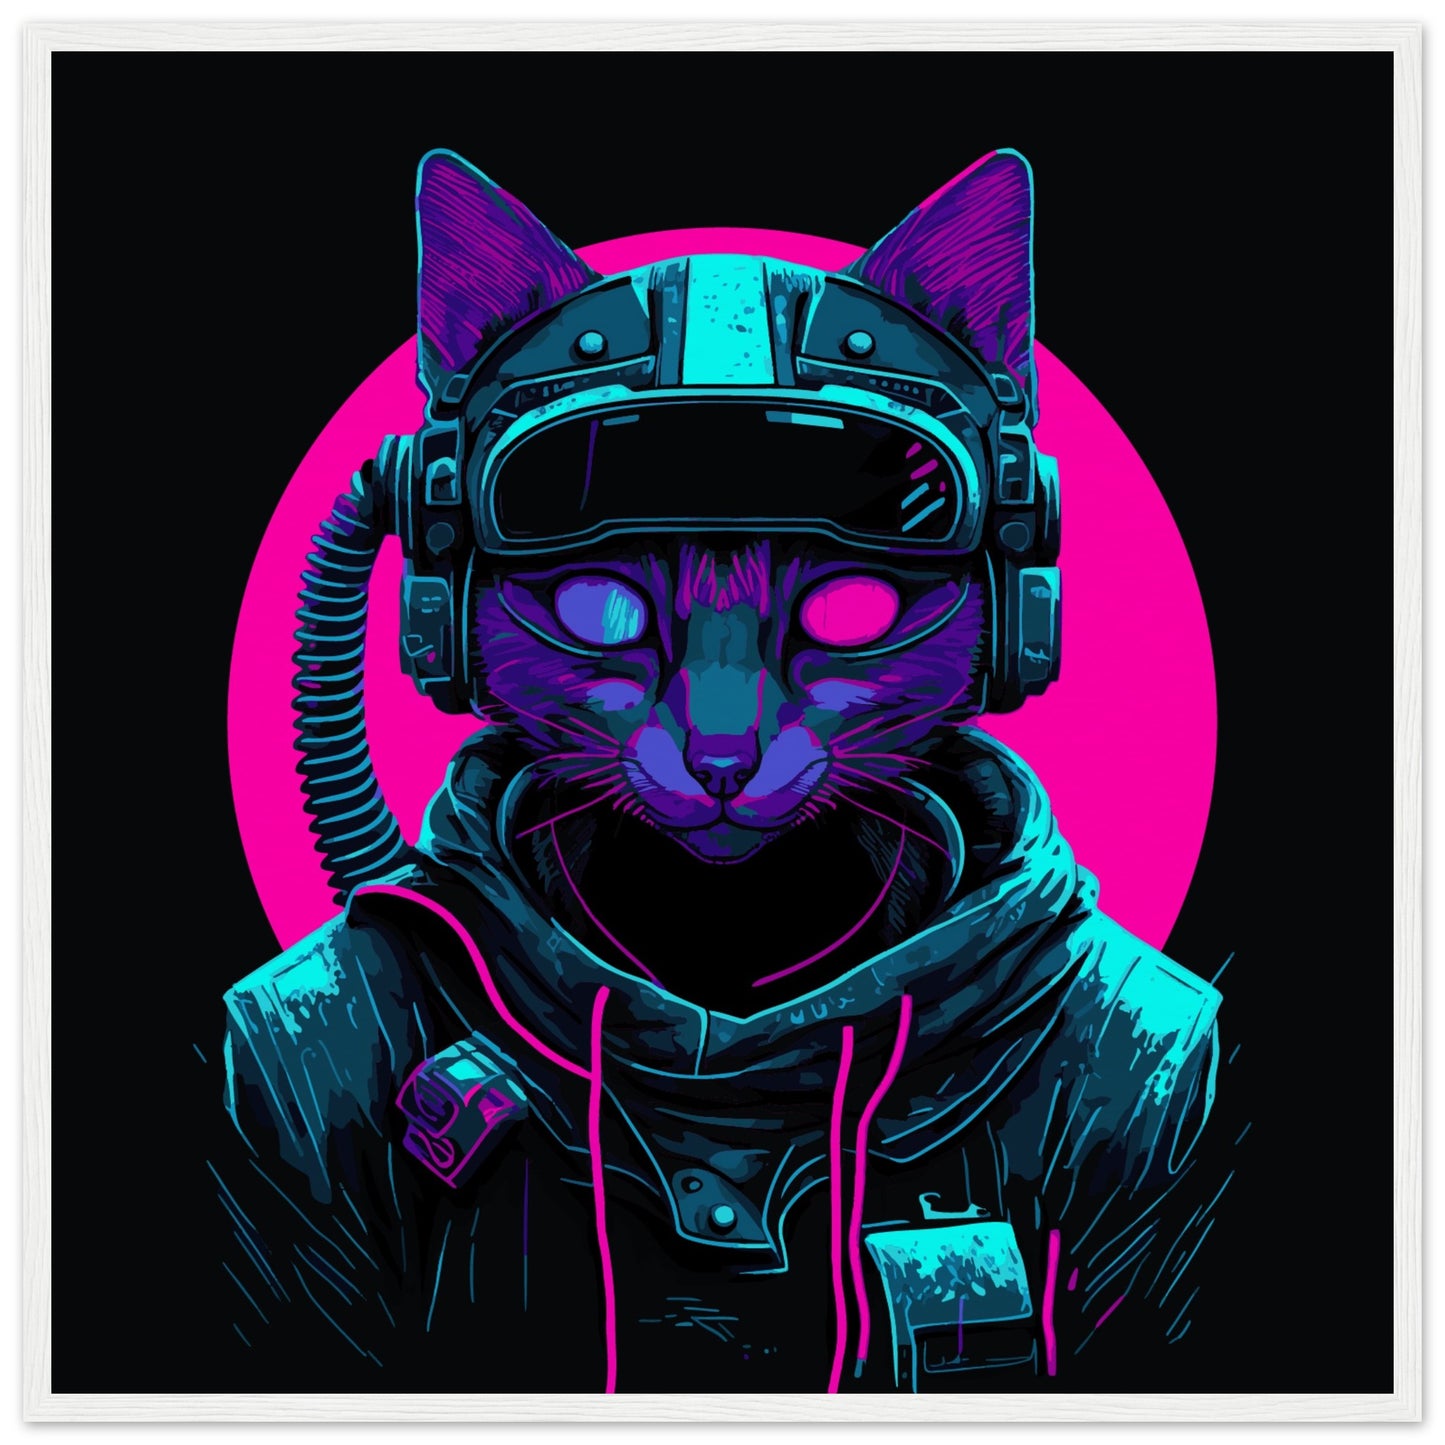 Cyber Cat